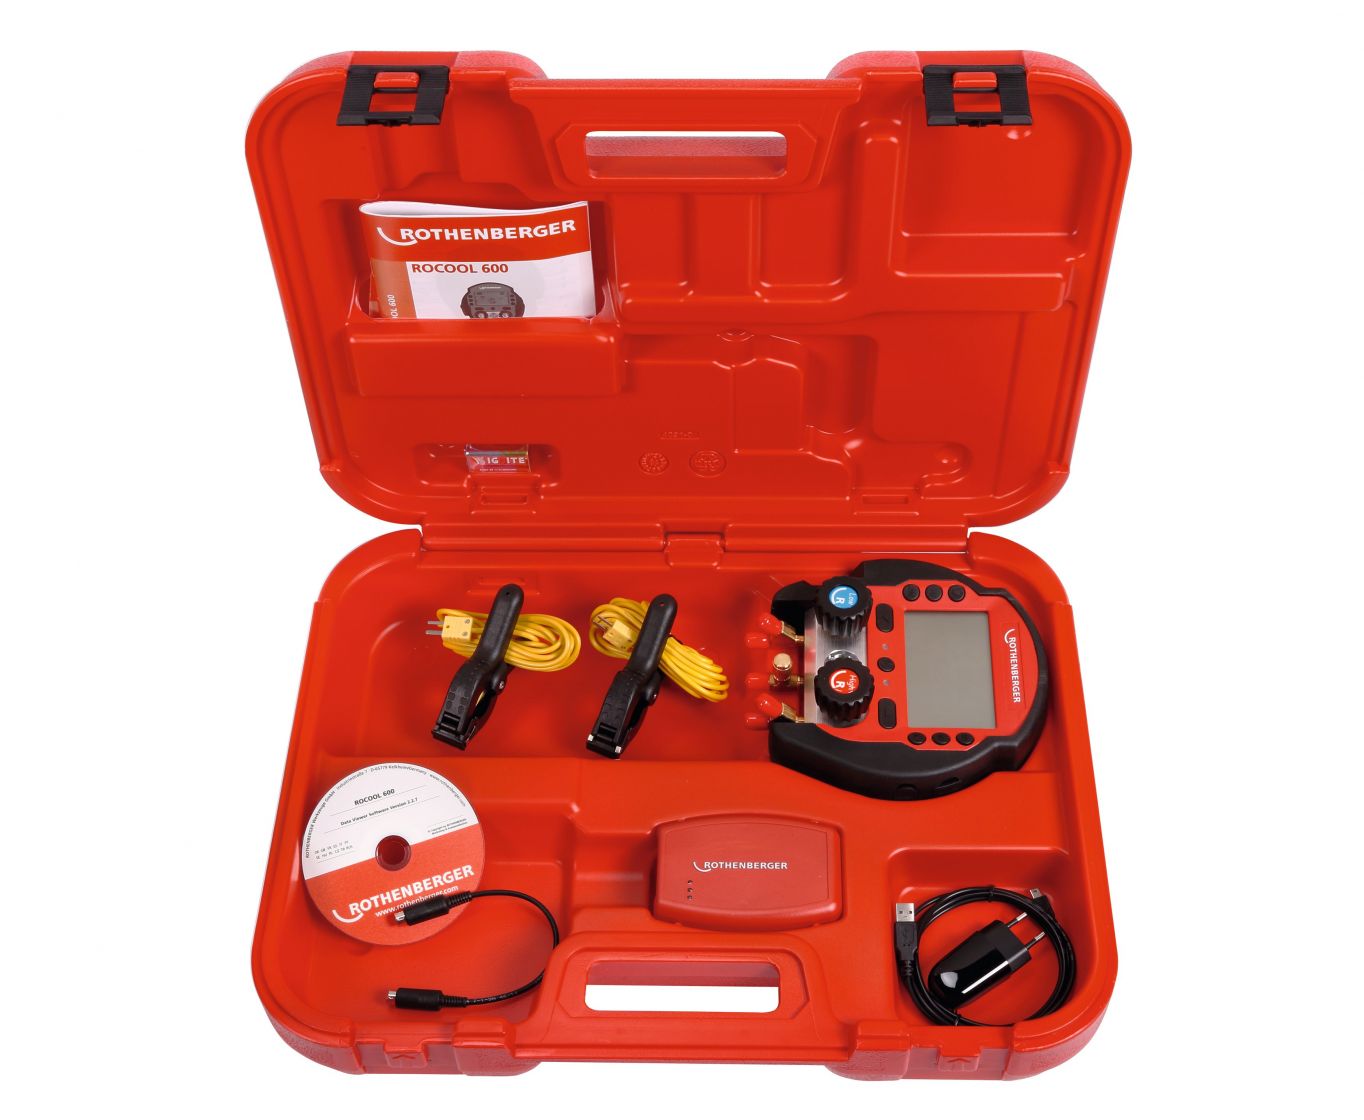 více o produktu - Baterie manometrová digitální ROCOOL 600 Set 3 se 2 teplotními svorkami a RED boxem, 1000000572, Rothenberger